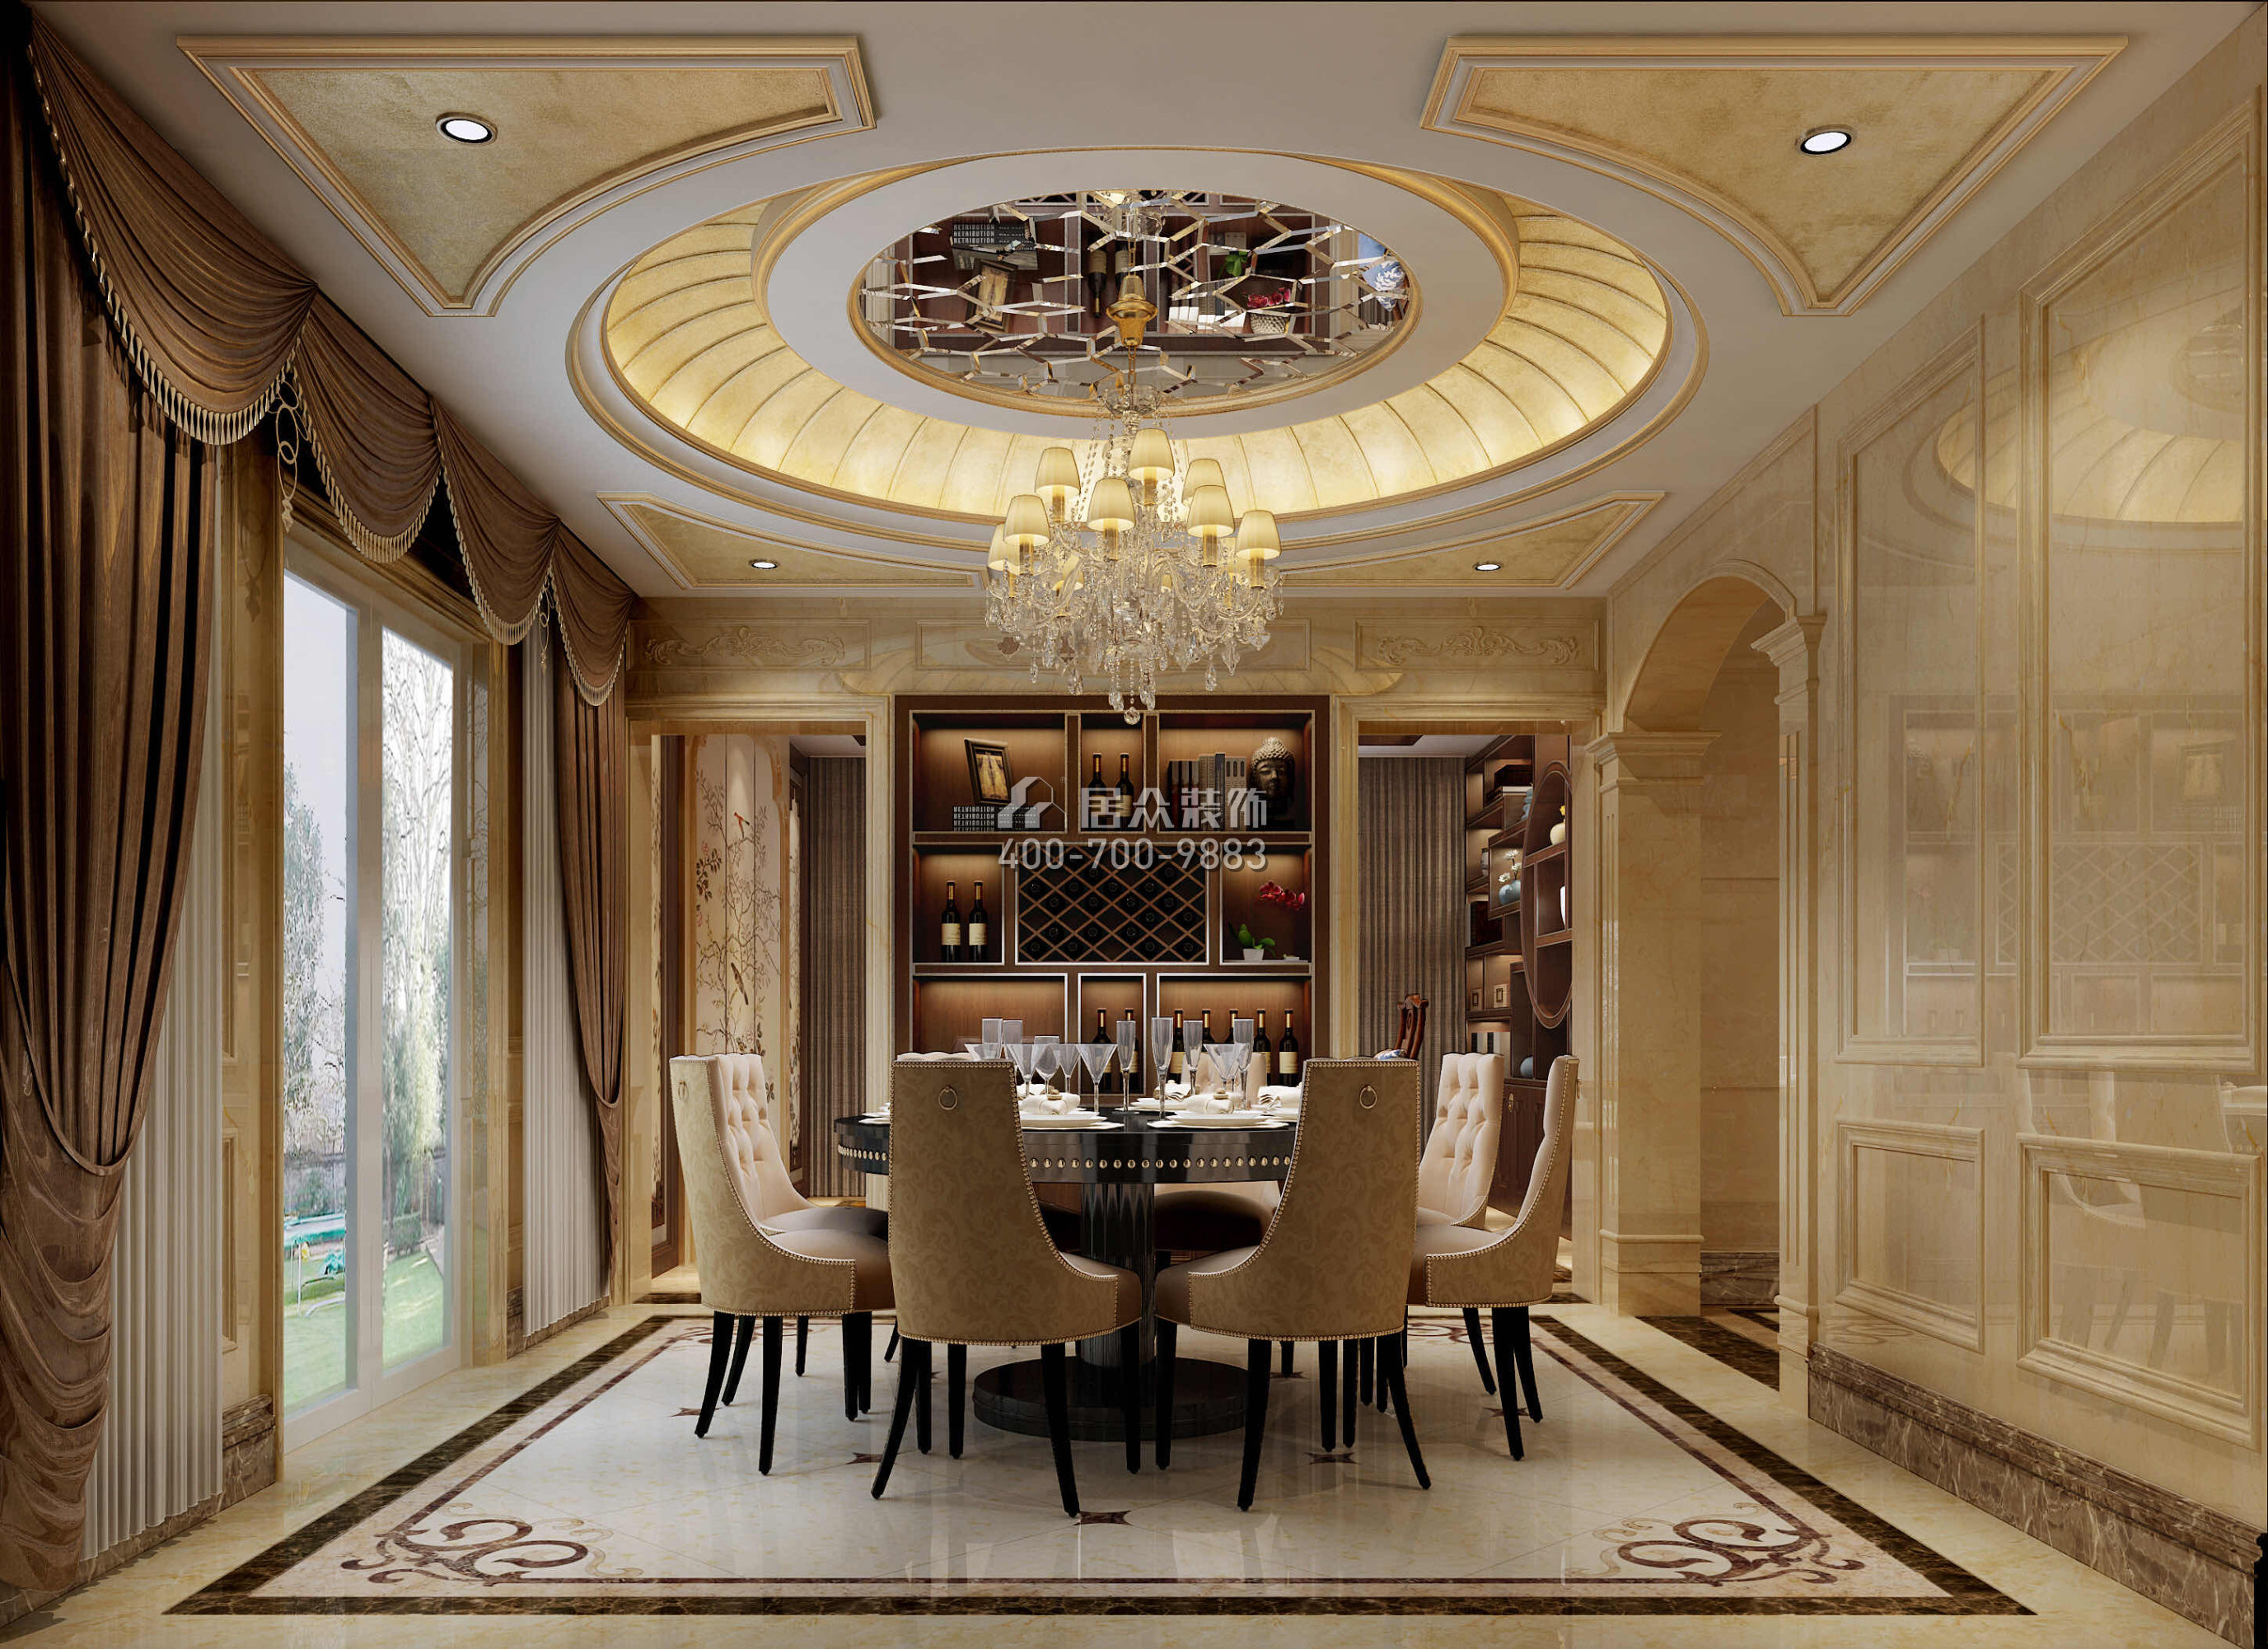 海逸豪庭800平方米欧式风格别墅户型餐厅装修效果图